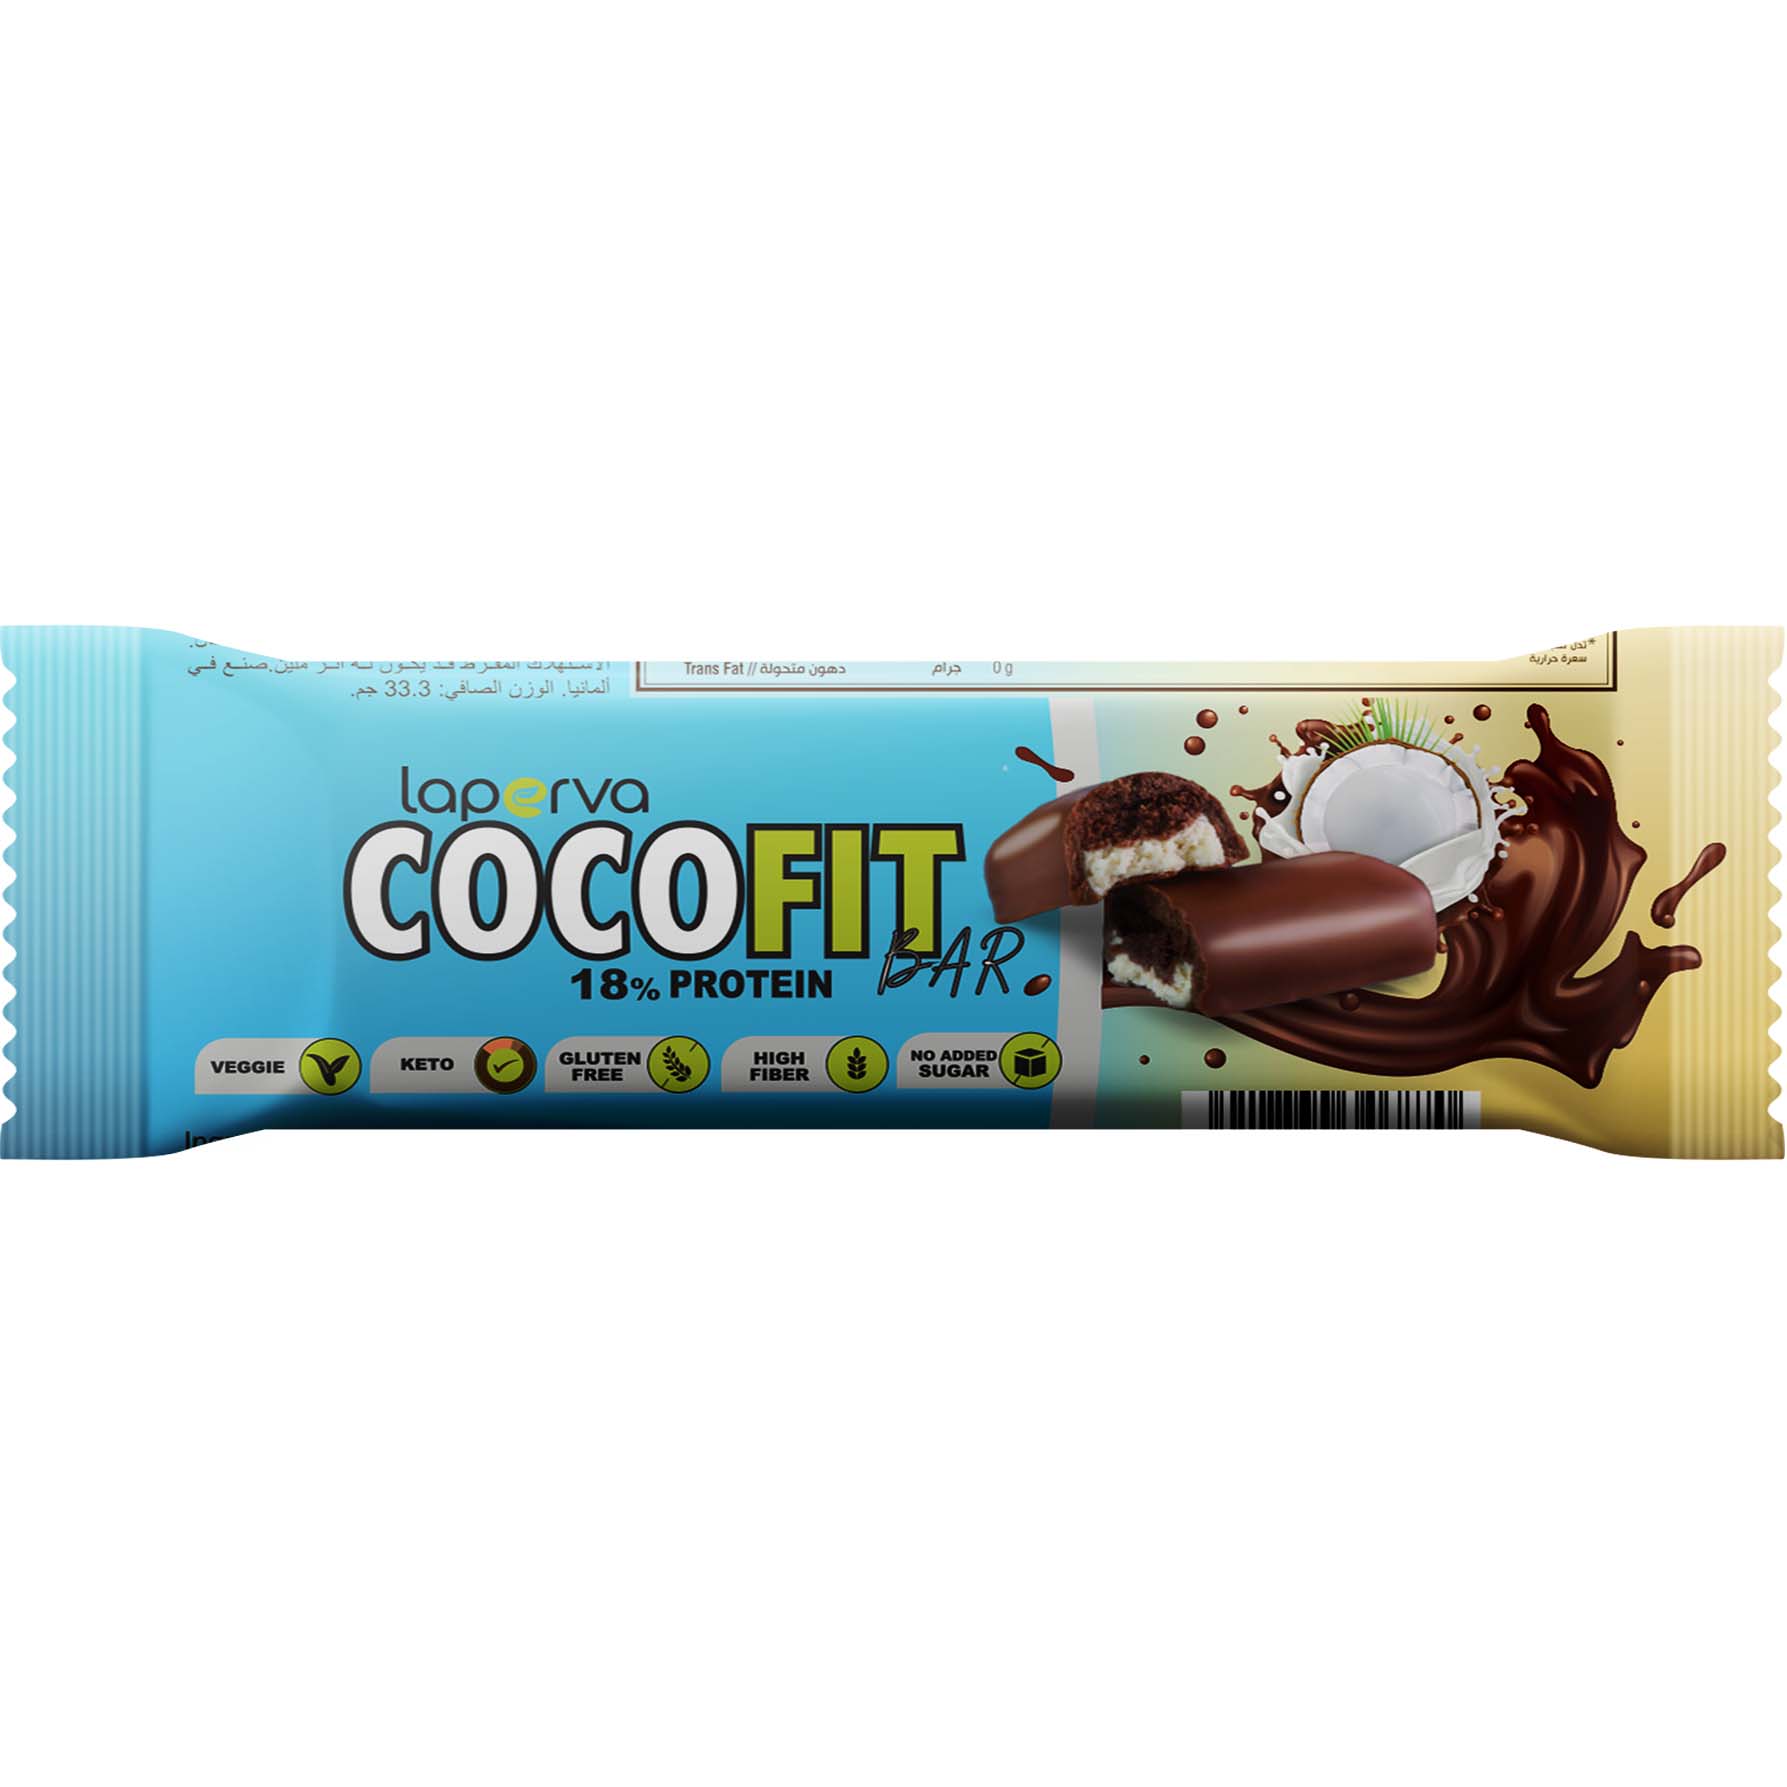 Laperva Coco Fit Bar 1 Bar